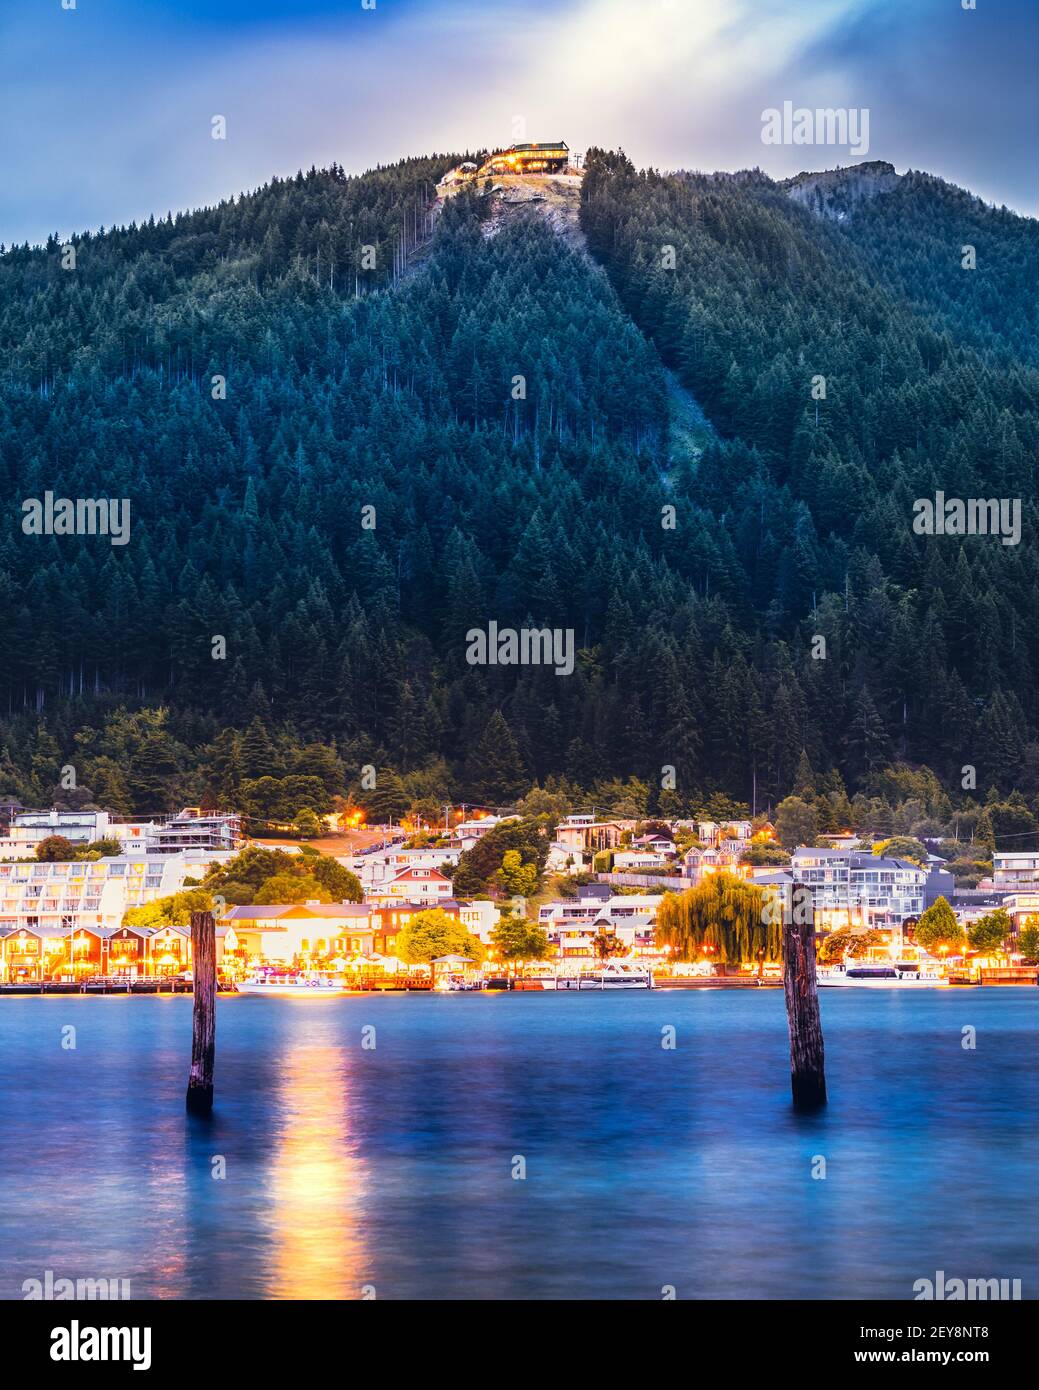 Vertikale Aufnahme von queenstown, Neuseeland Aufnahme von der anderen Seite der Bucht zur blauen Stunde Stockfoto